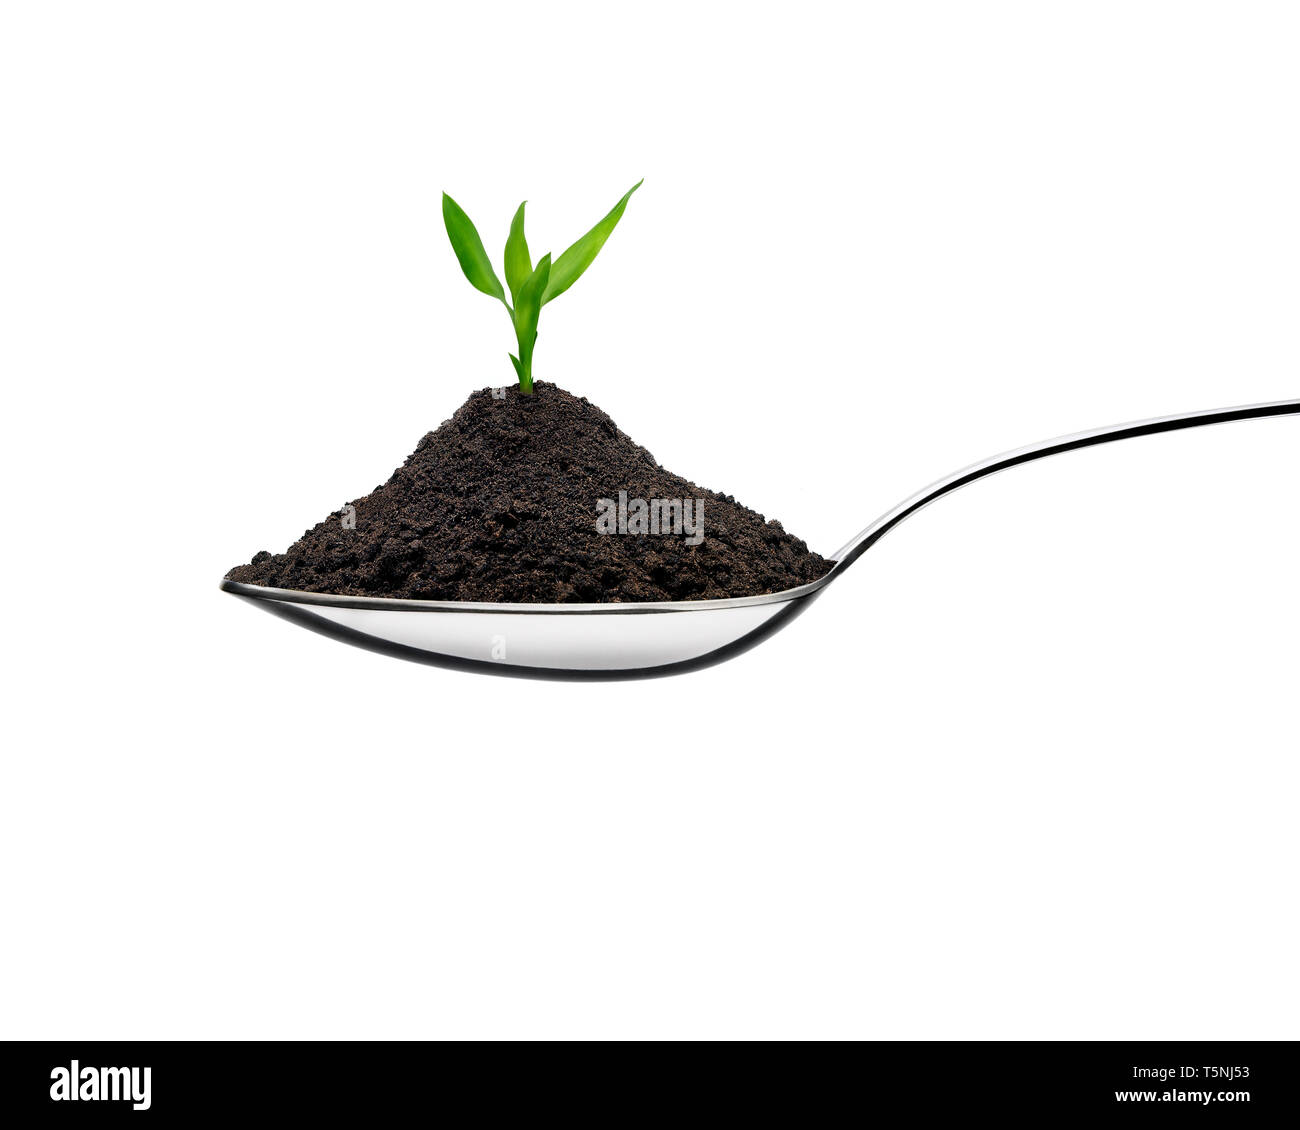 Tas de terre dans une cuillère et la croissance de plante dans un concept écologique. Vue avant contre l'arrière-plan blanc. Banque D'Images